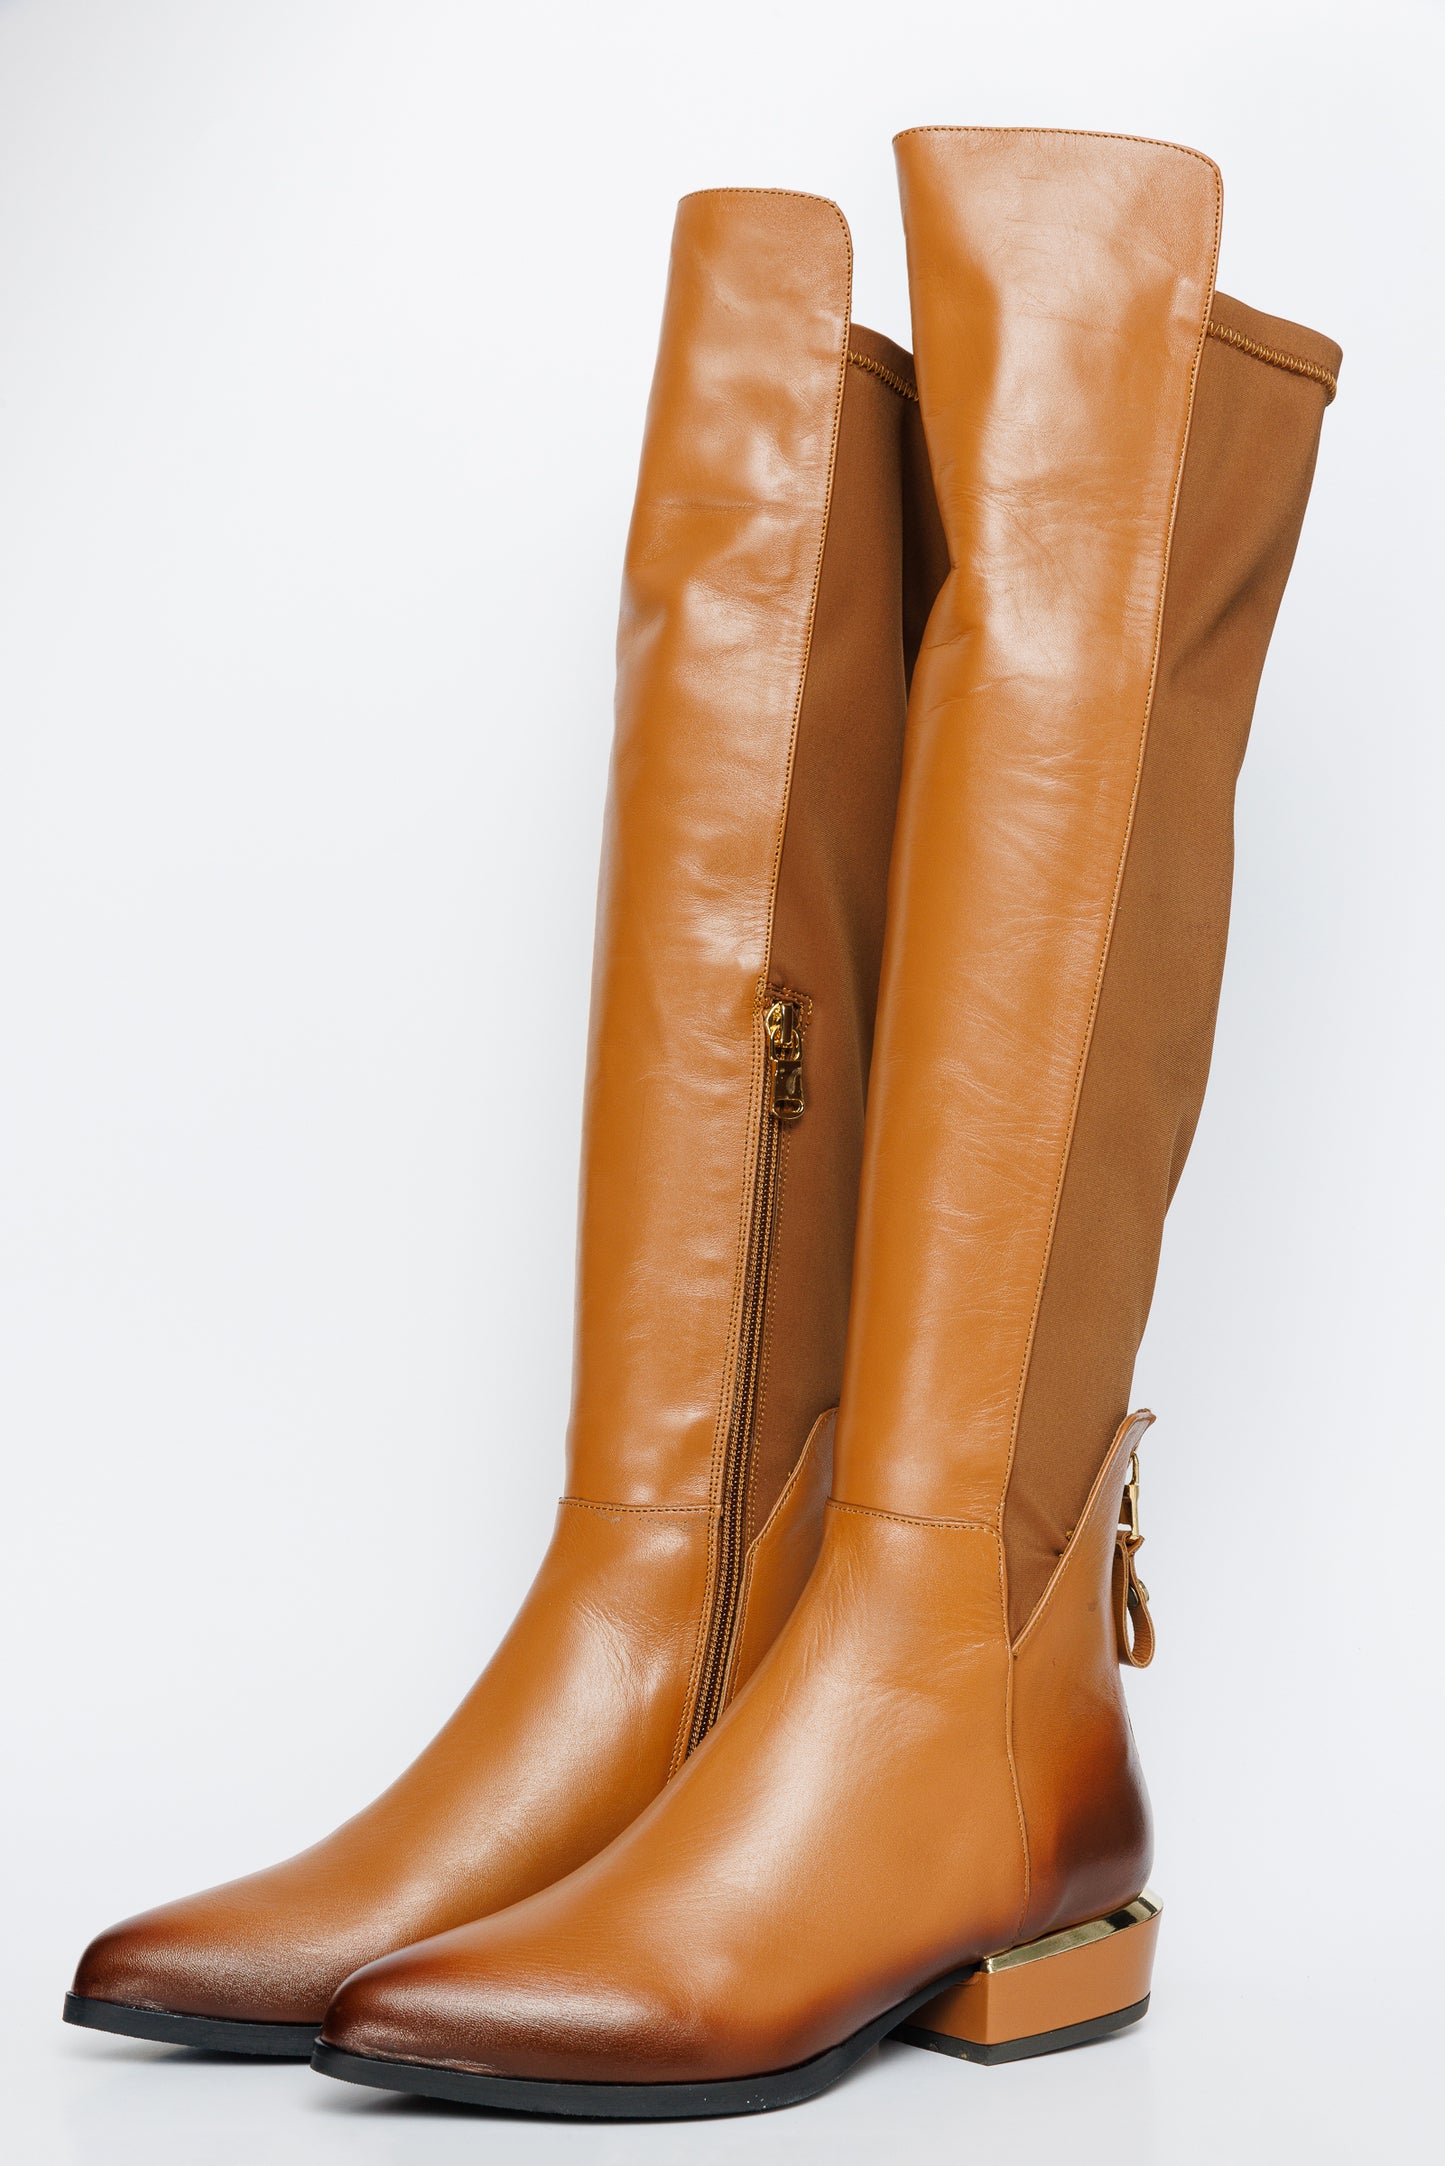 The Fairoks Tan Leather Knee High Women Boot